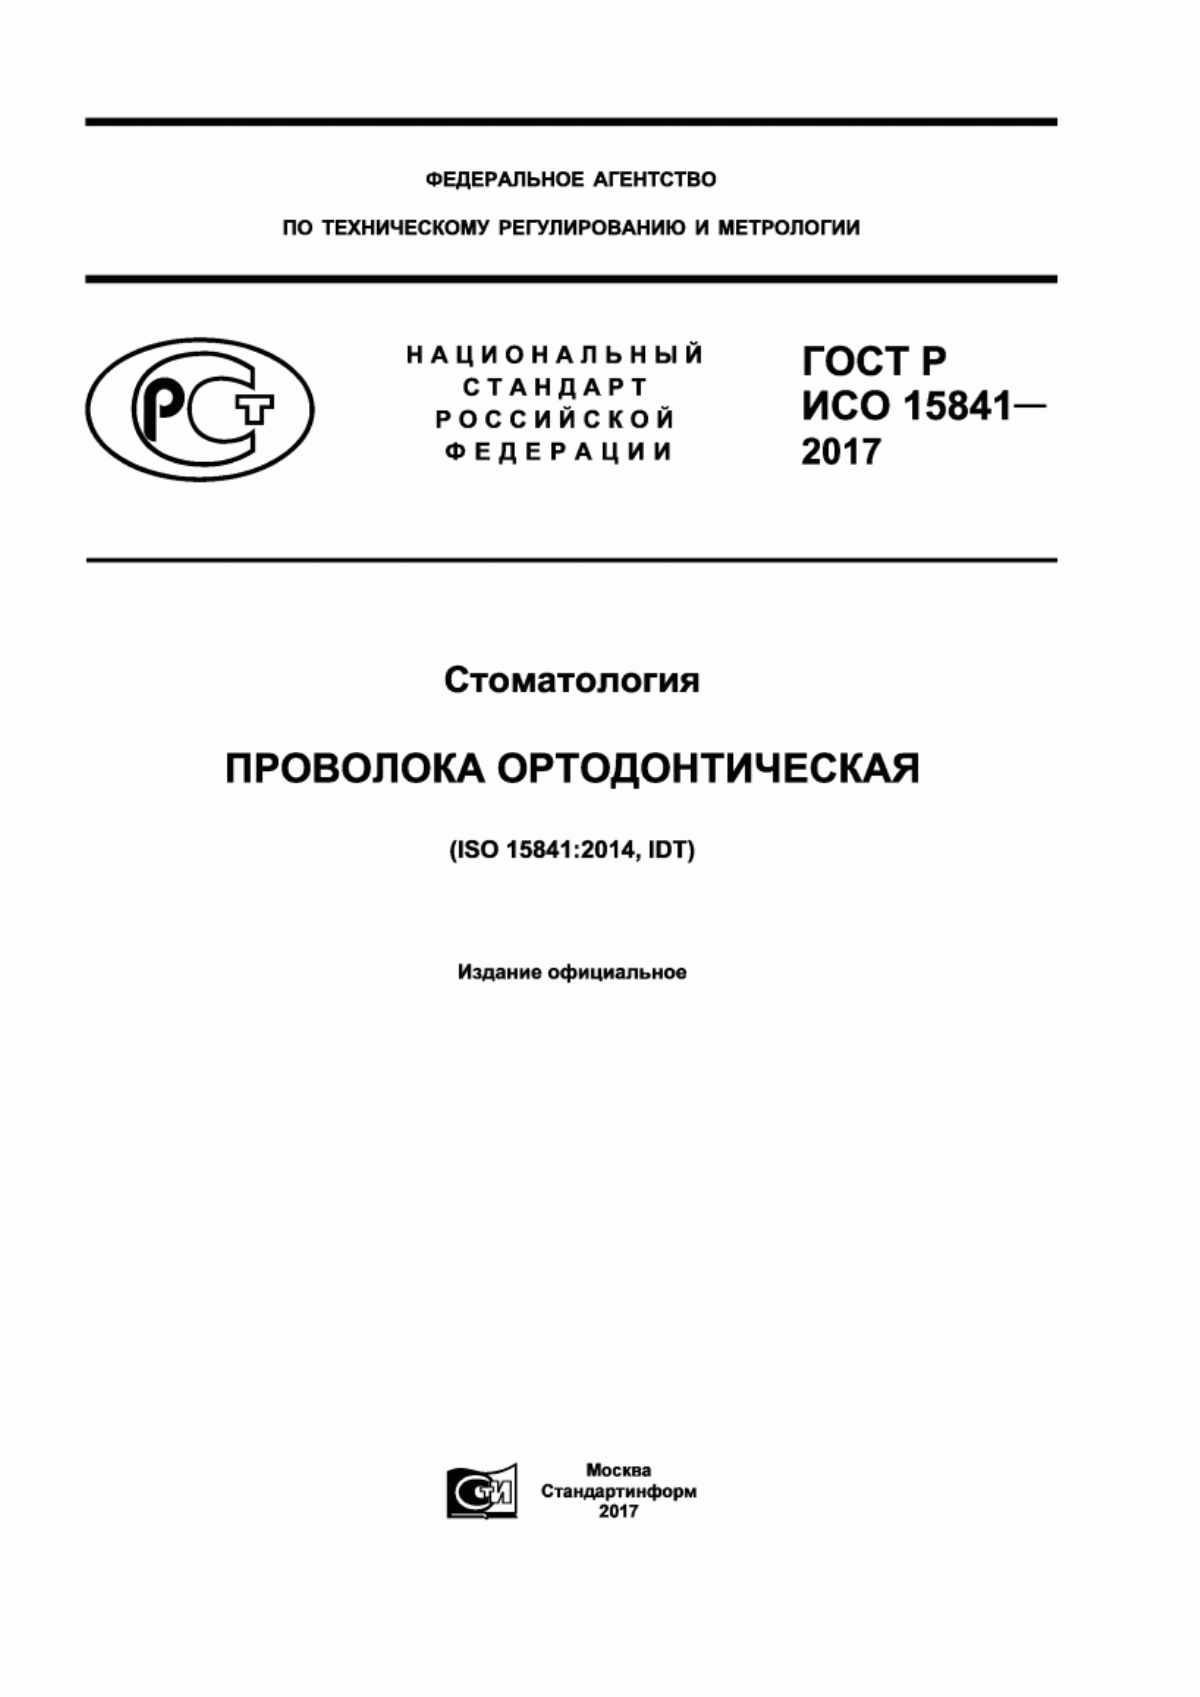 ГОСТ Р ИСО 15841-2017 Стоматология. Проволока ортодонтическая